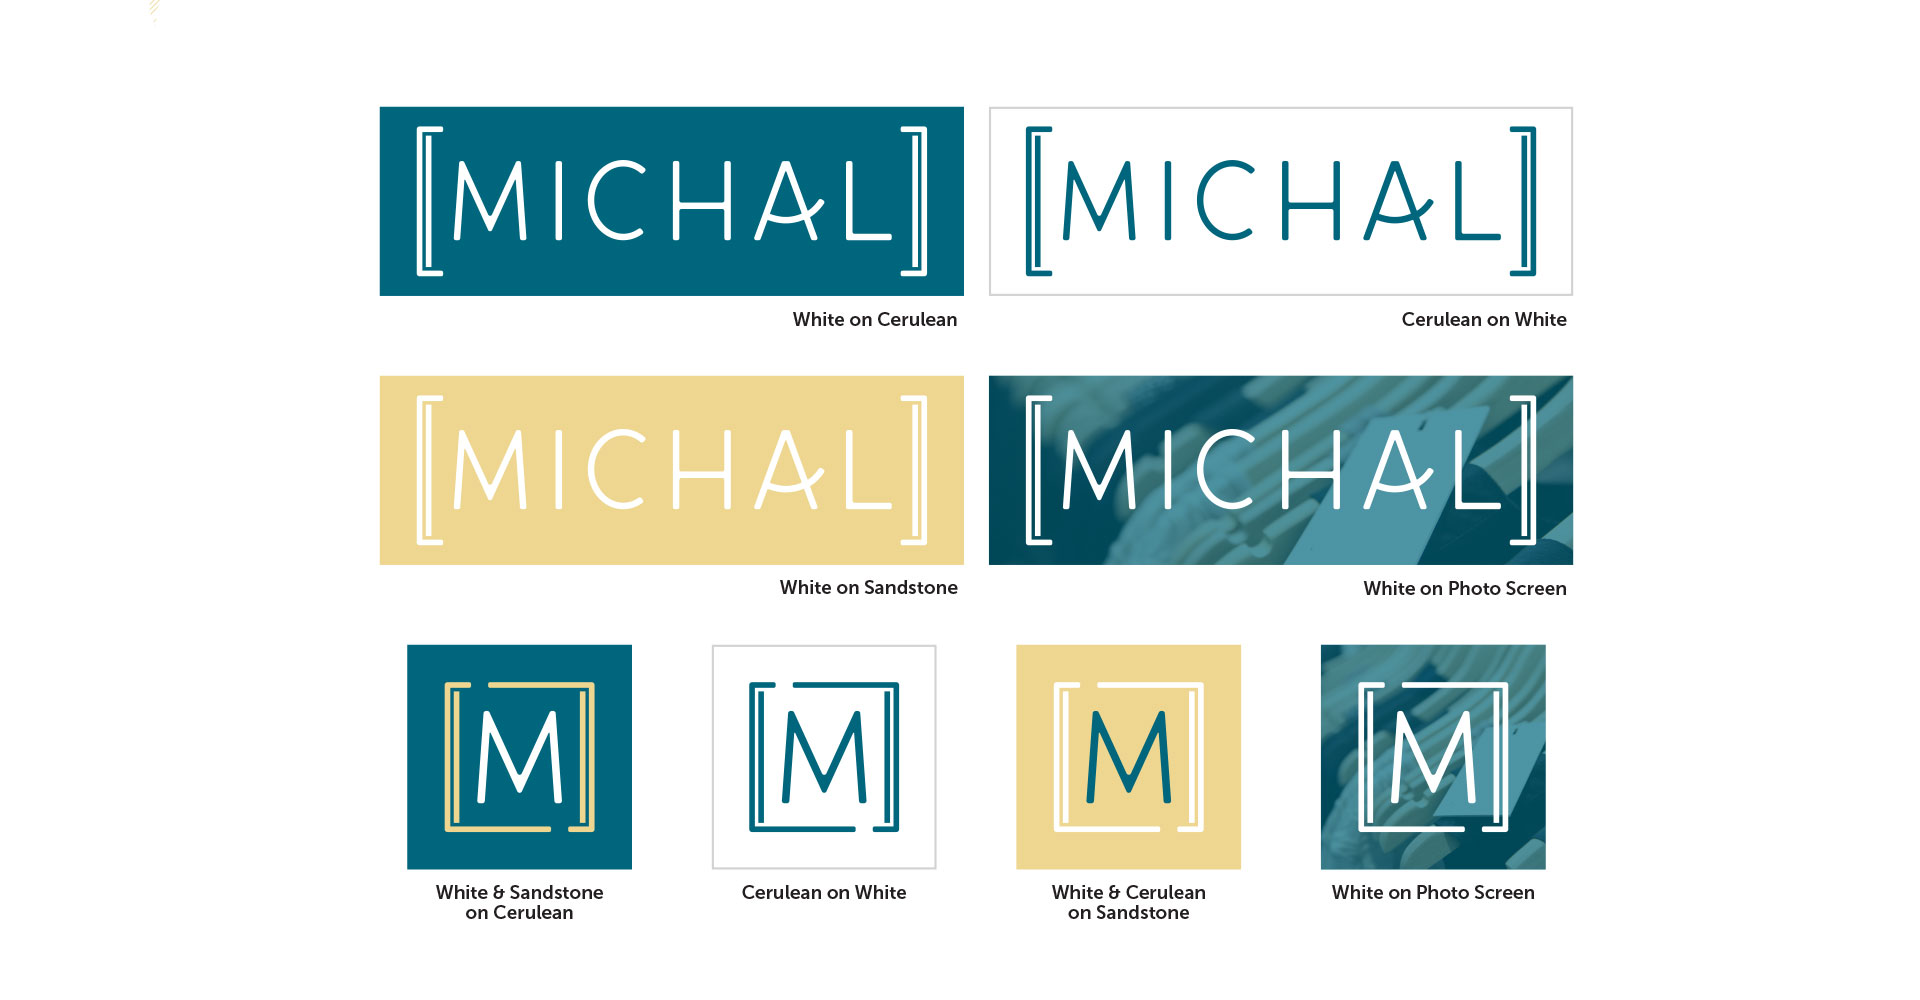 Michal logo alternatives